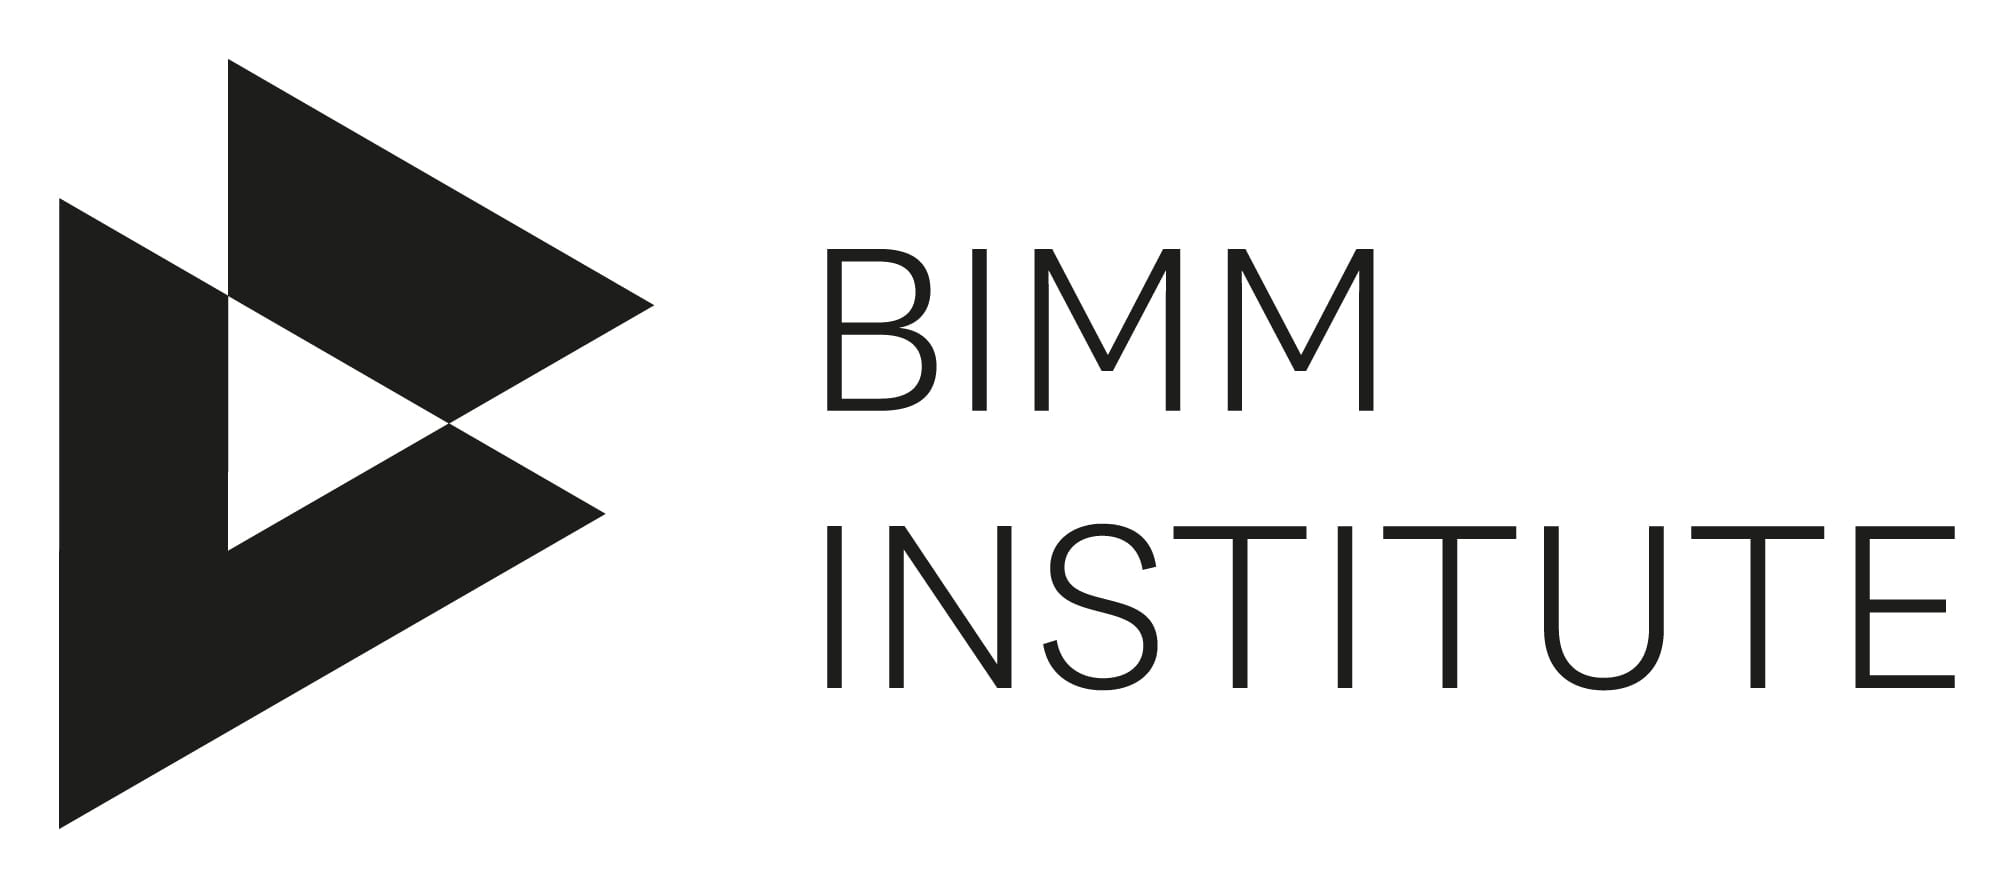 BIMM Institute Berlin Scholarship